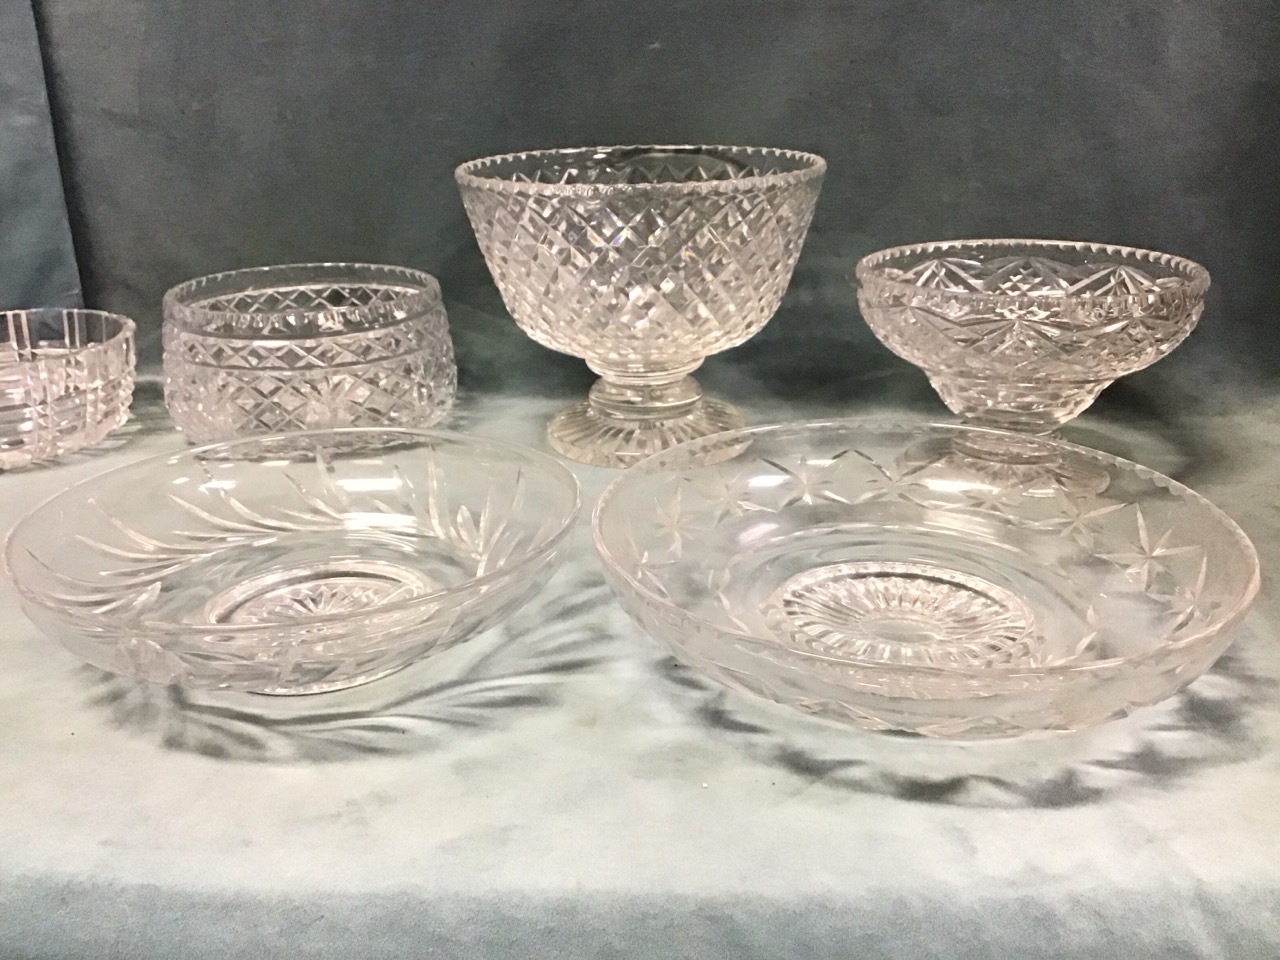 Miscellaneous cut glass bowls - two Stuart shallow footed, a Stuart pedestal punch bowl, a Harbridge - Image 2 of 3